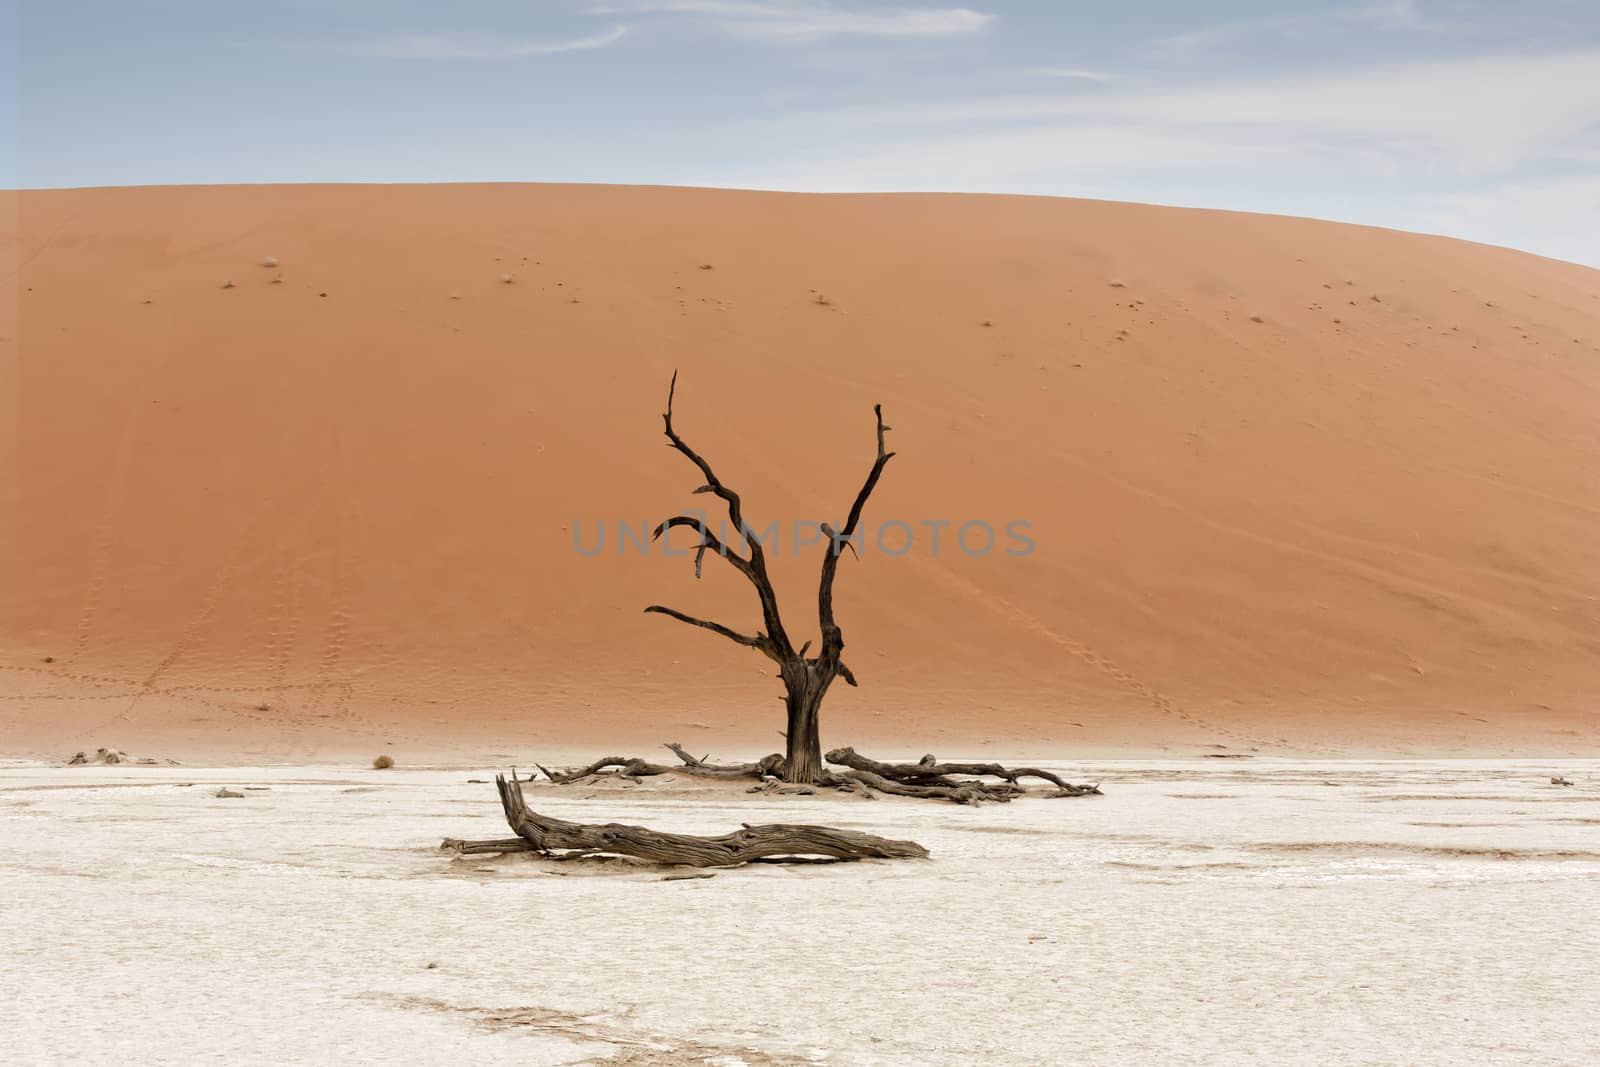 desert Namib,Namibia,Sossusvlei location by Tjeerdkruse